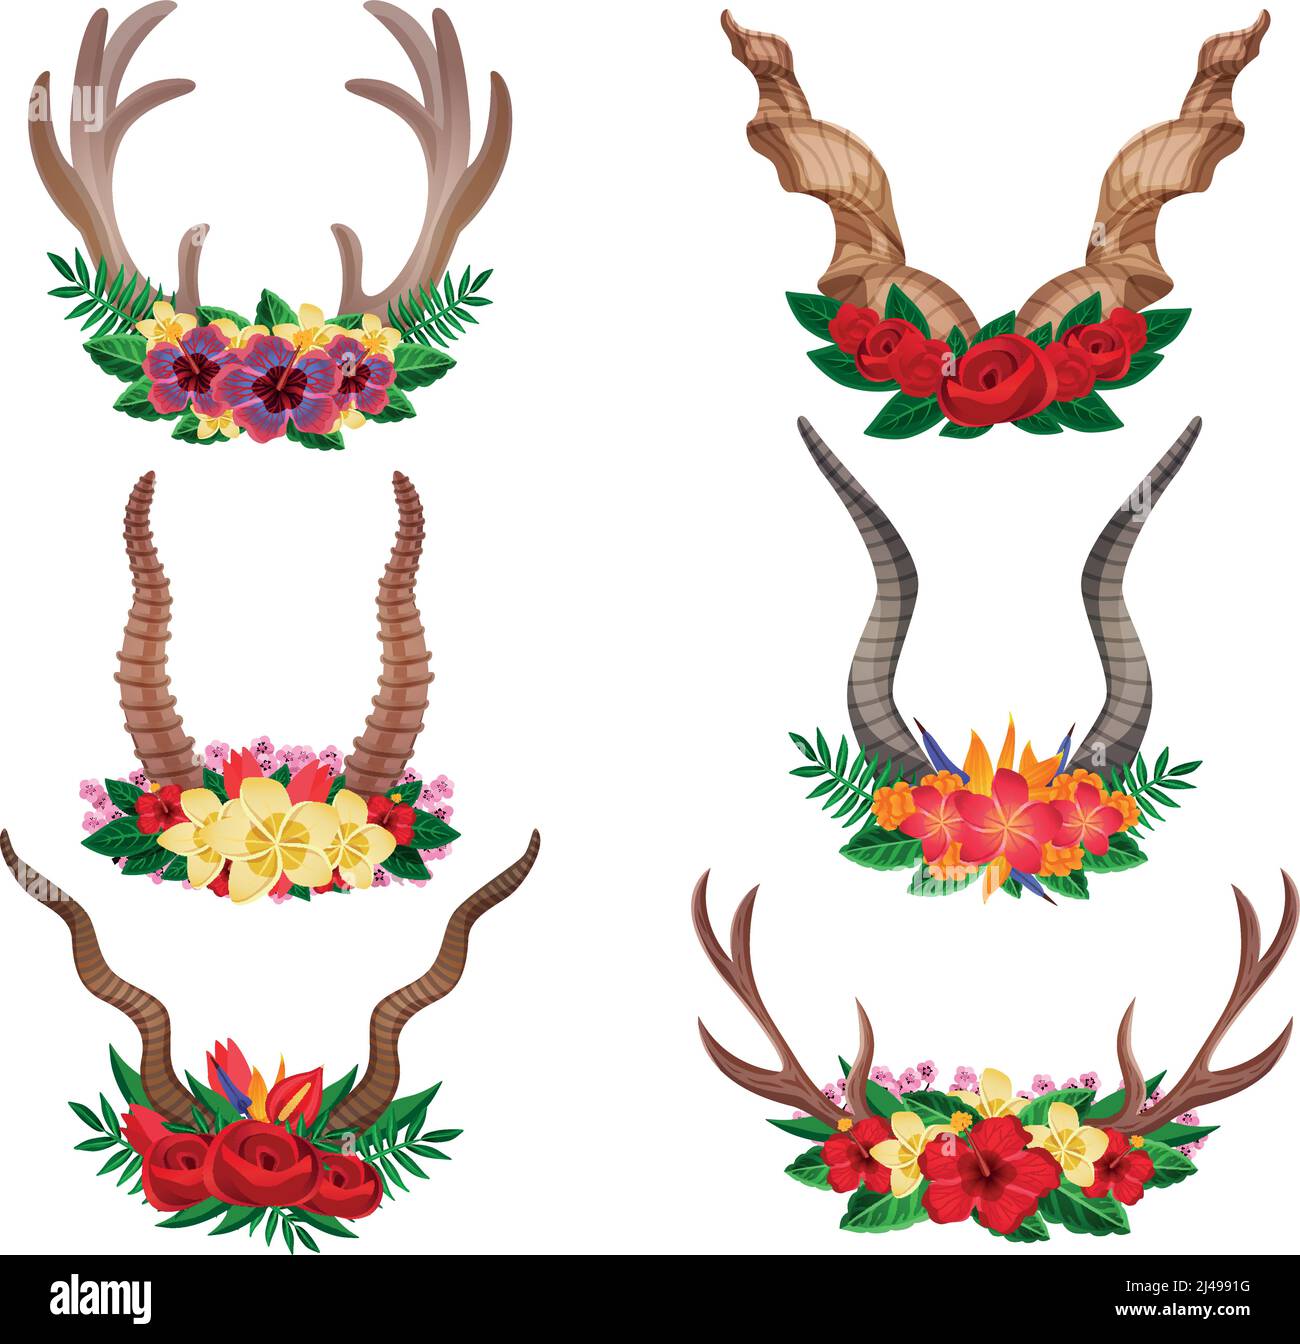 Animali selvatici caro capra alci ornamentali corna floreali set decorato con composizioni floreali illustrazione vettoriale isolata Illustrazione Vettoriale